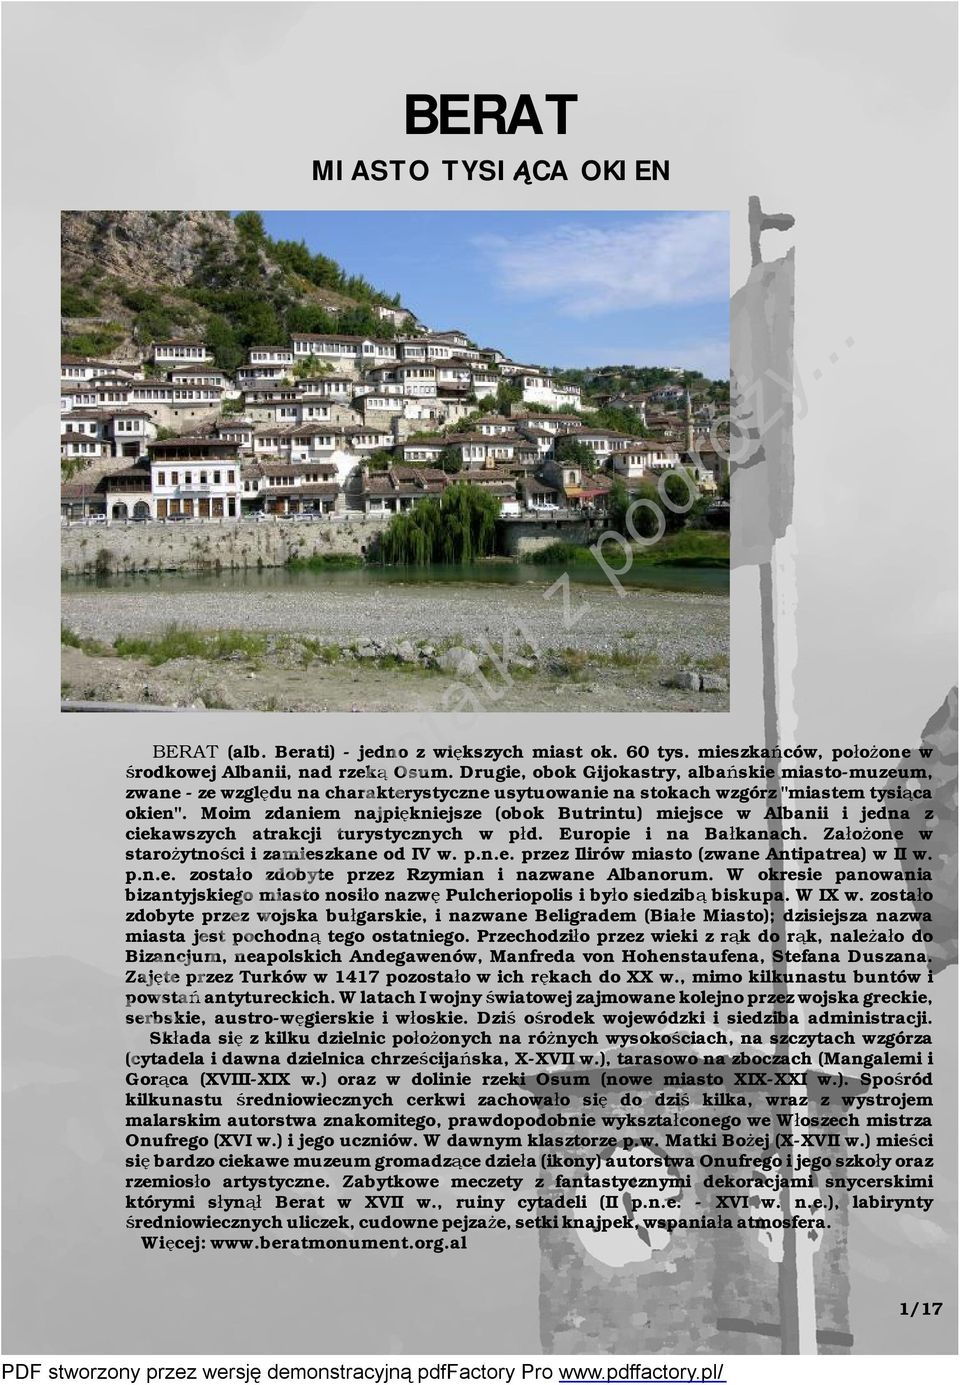 Moim zdaniem najpiękniejsze (obok Butrintu) miejsce w Albanii i jedna z ciekawszych atrakcji turystycznych w płd. Europie i na Bałkanach. Założone w starożytności izamieszkane od IV w. p.n.e. przez Ilirów miasto (zwane Antipatrea) wii w.